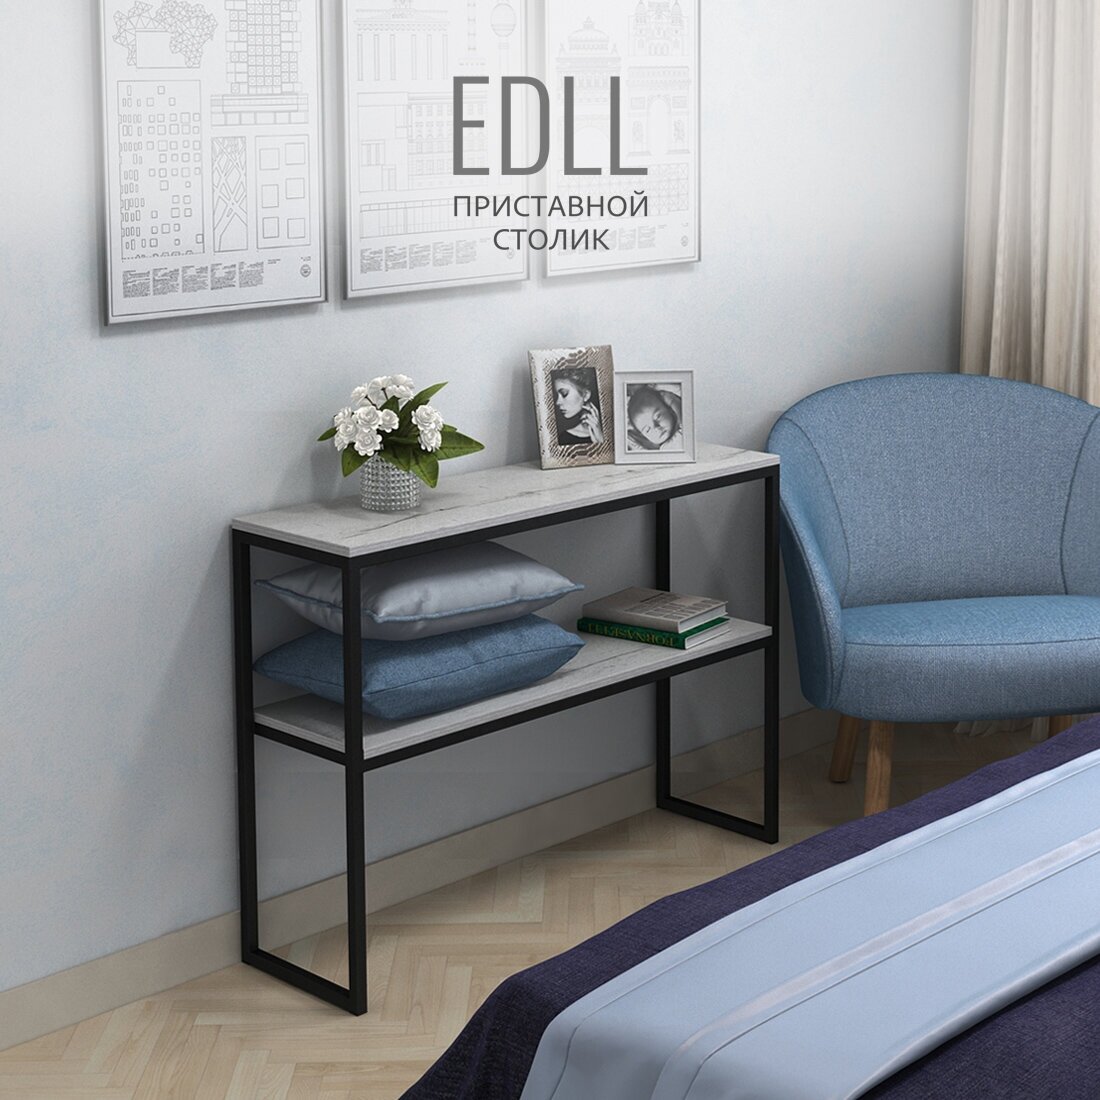 Консольный столик EDDL loft